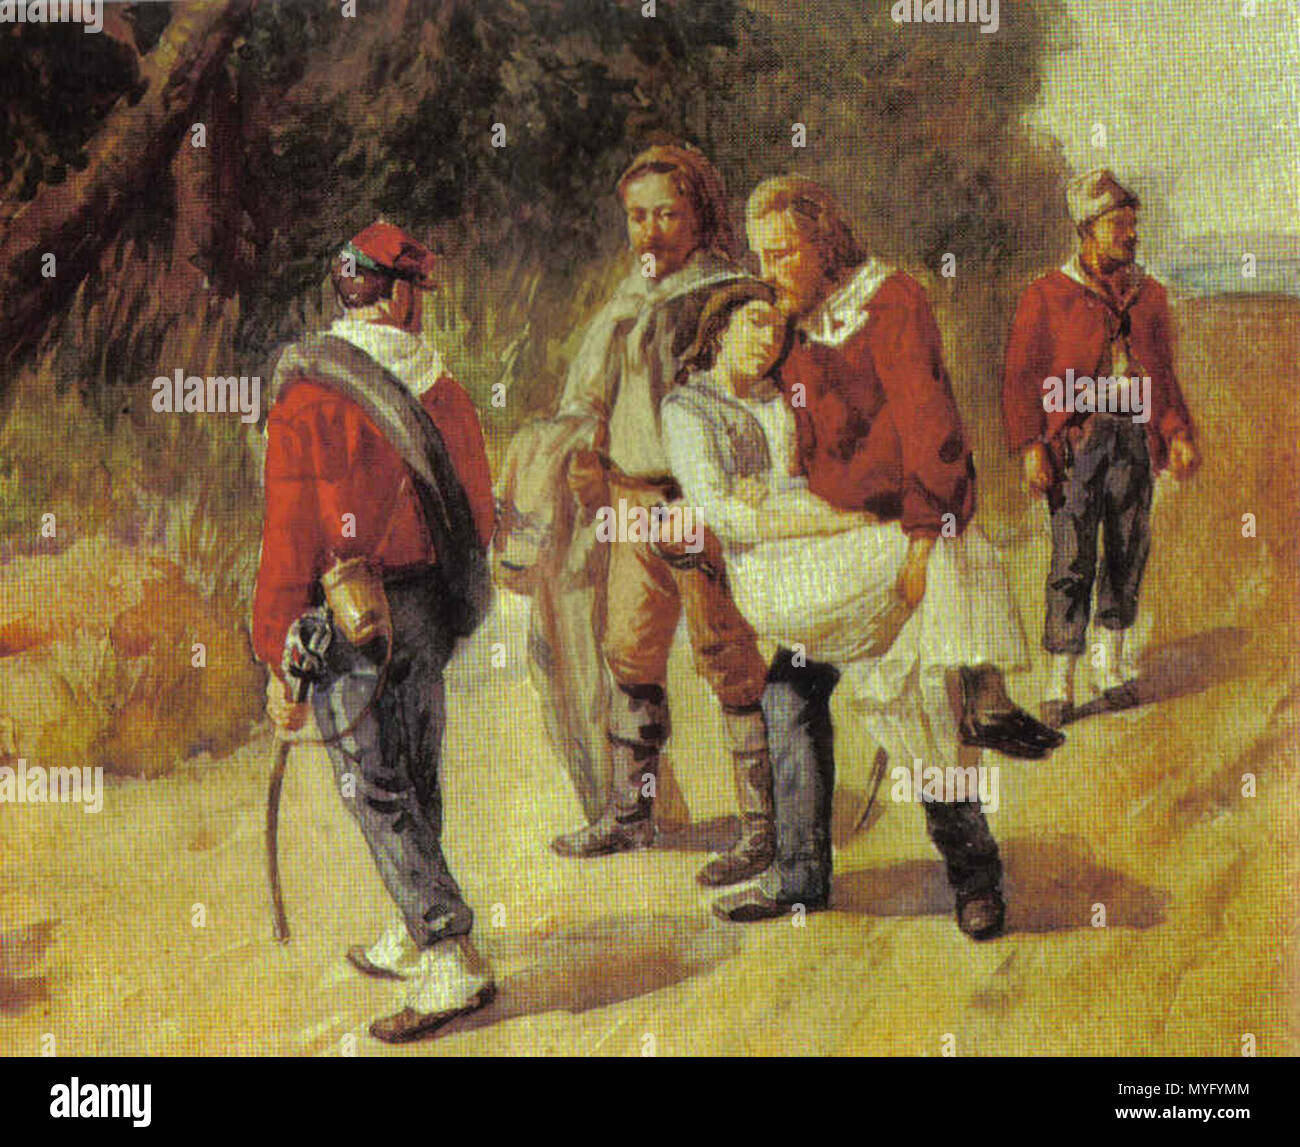 . Italienische Revolutionär Giuseppe Garibaldi und seine sterbenden Begleiter Anita Garibaldi Flucht aus San Marino 1849 202 Garbaldieanita Stockfoto